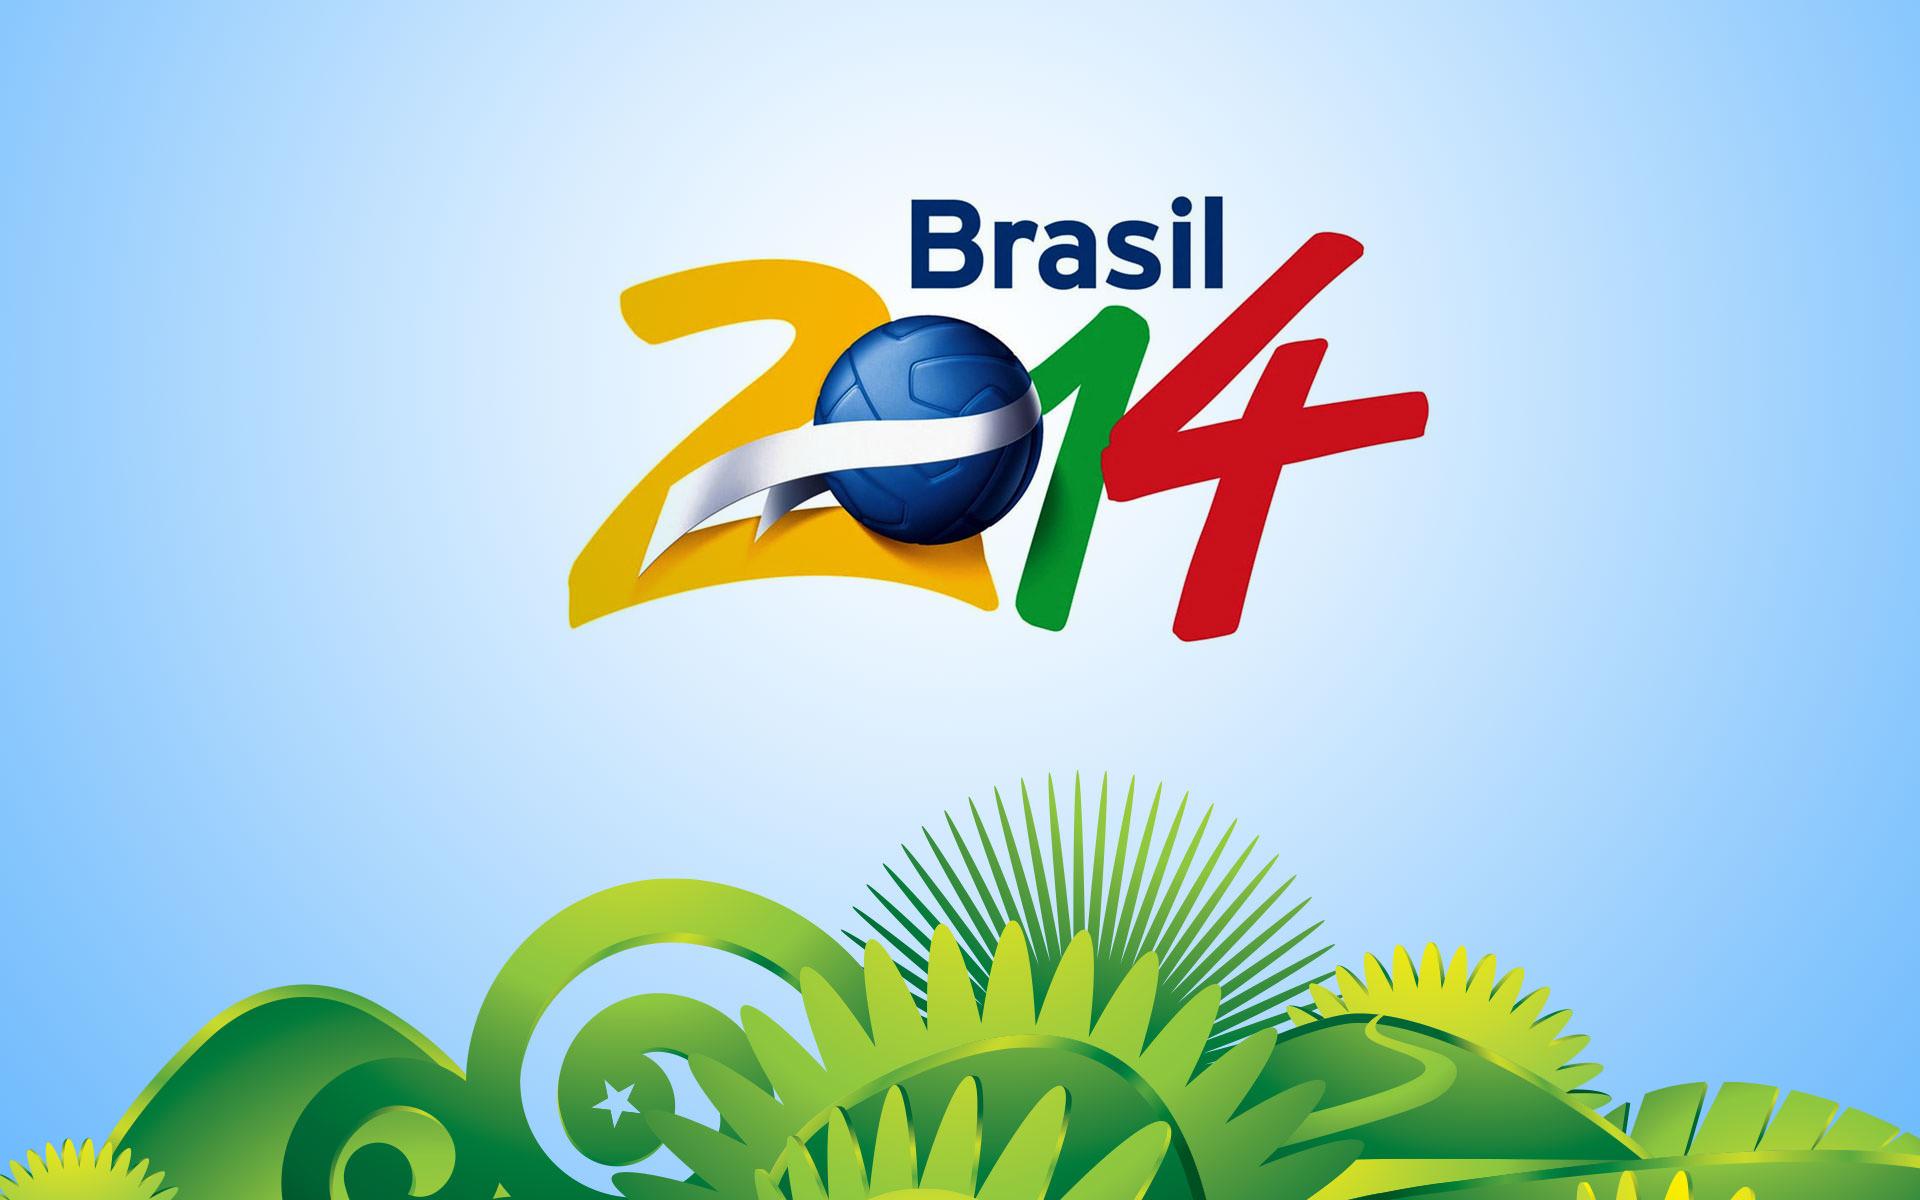 Brazil Football World Cup 2014 Wallpaper and Desktop Background